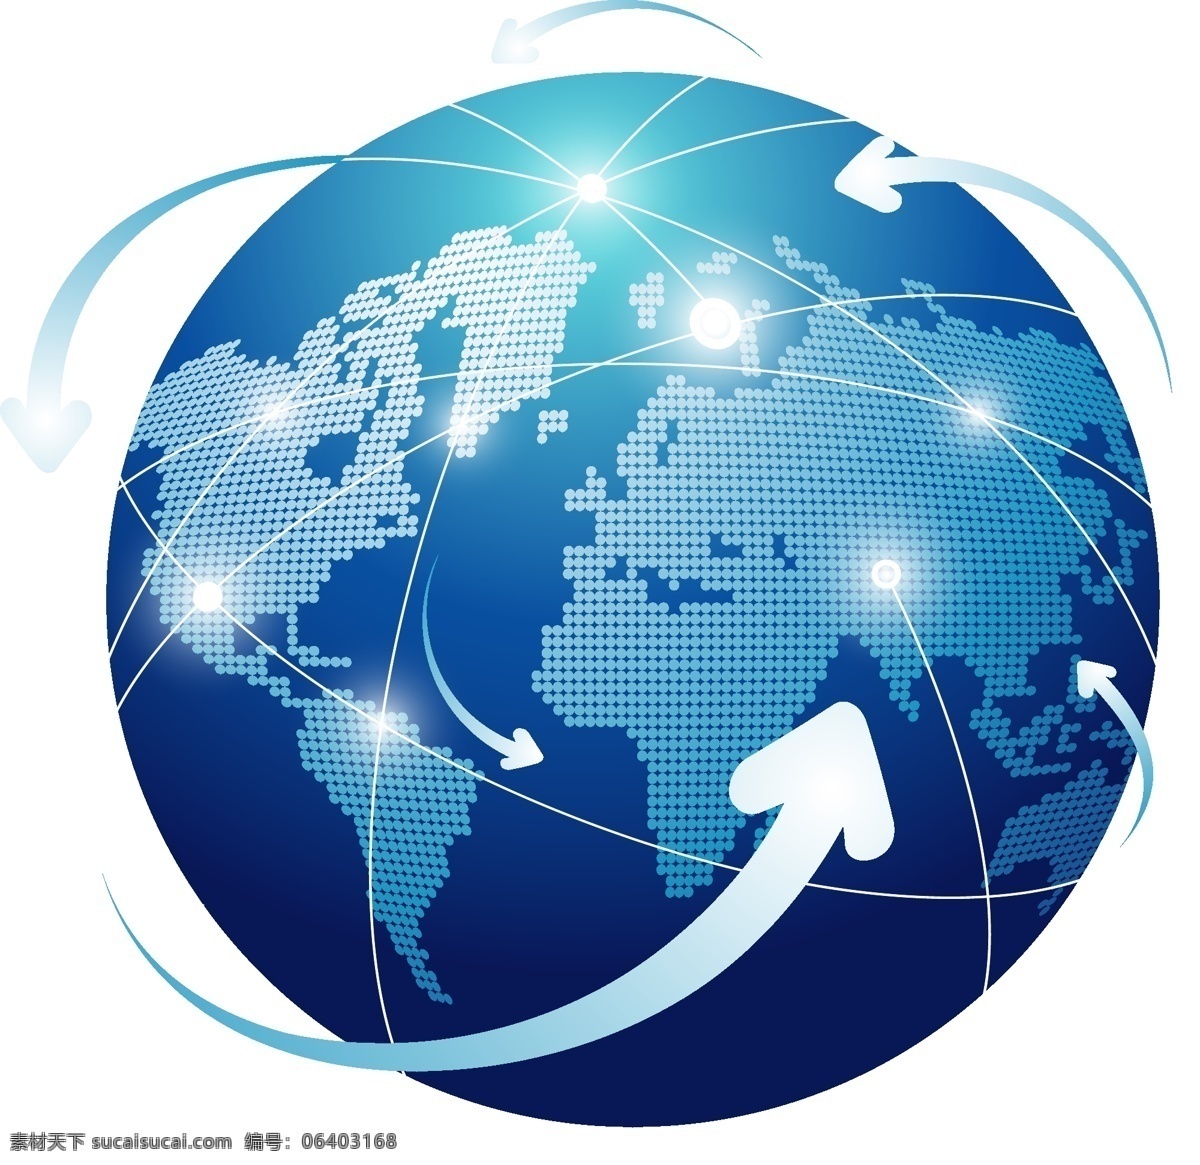 世界地球日 商务地球 3d地球 矢量地球 地球图标 手绘地球 地球表面 创意地球 科技感素材 网络科技 商务 科技点状图 地球轮廓 网状地球 星球 免费 免费素材 科技地球 ptt 商务背景 商务金融 商业插画